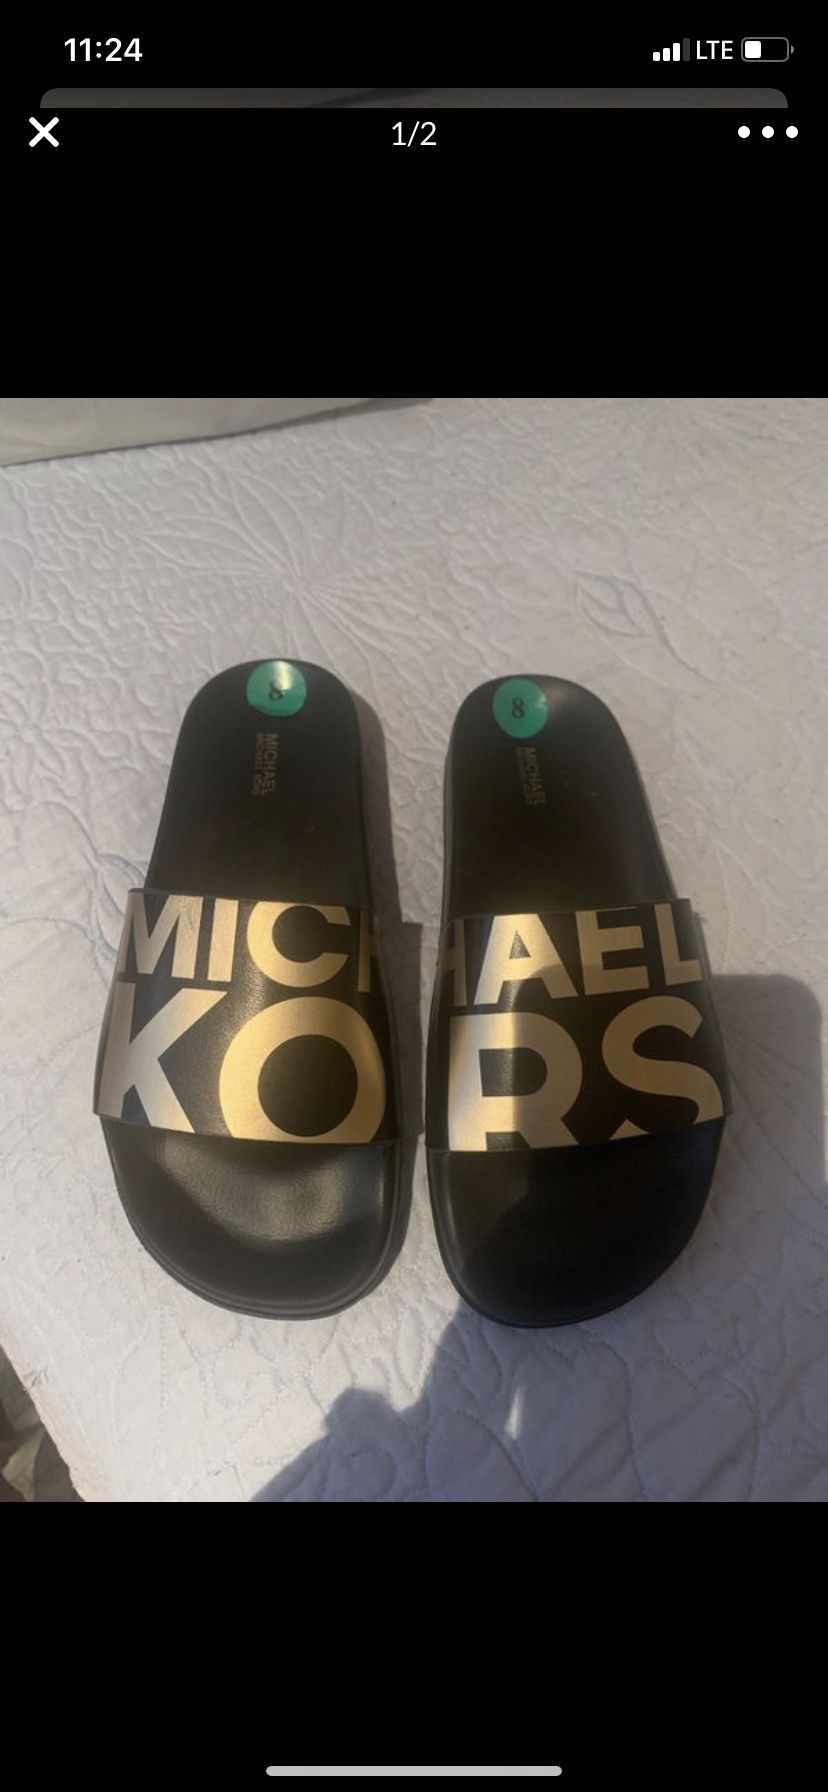 Authentic Michael Kors women’s sandals size 8